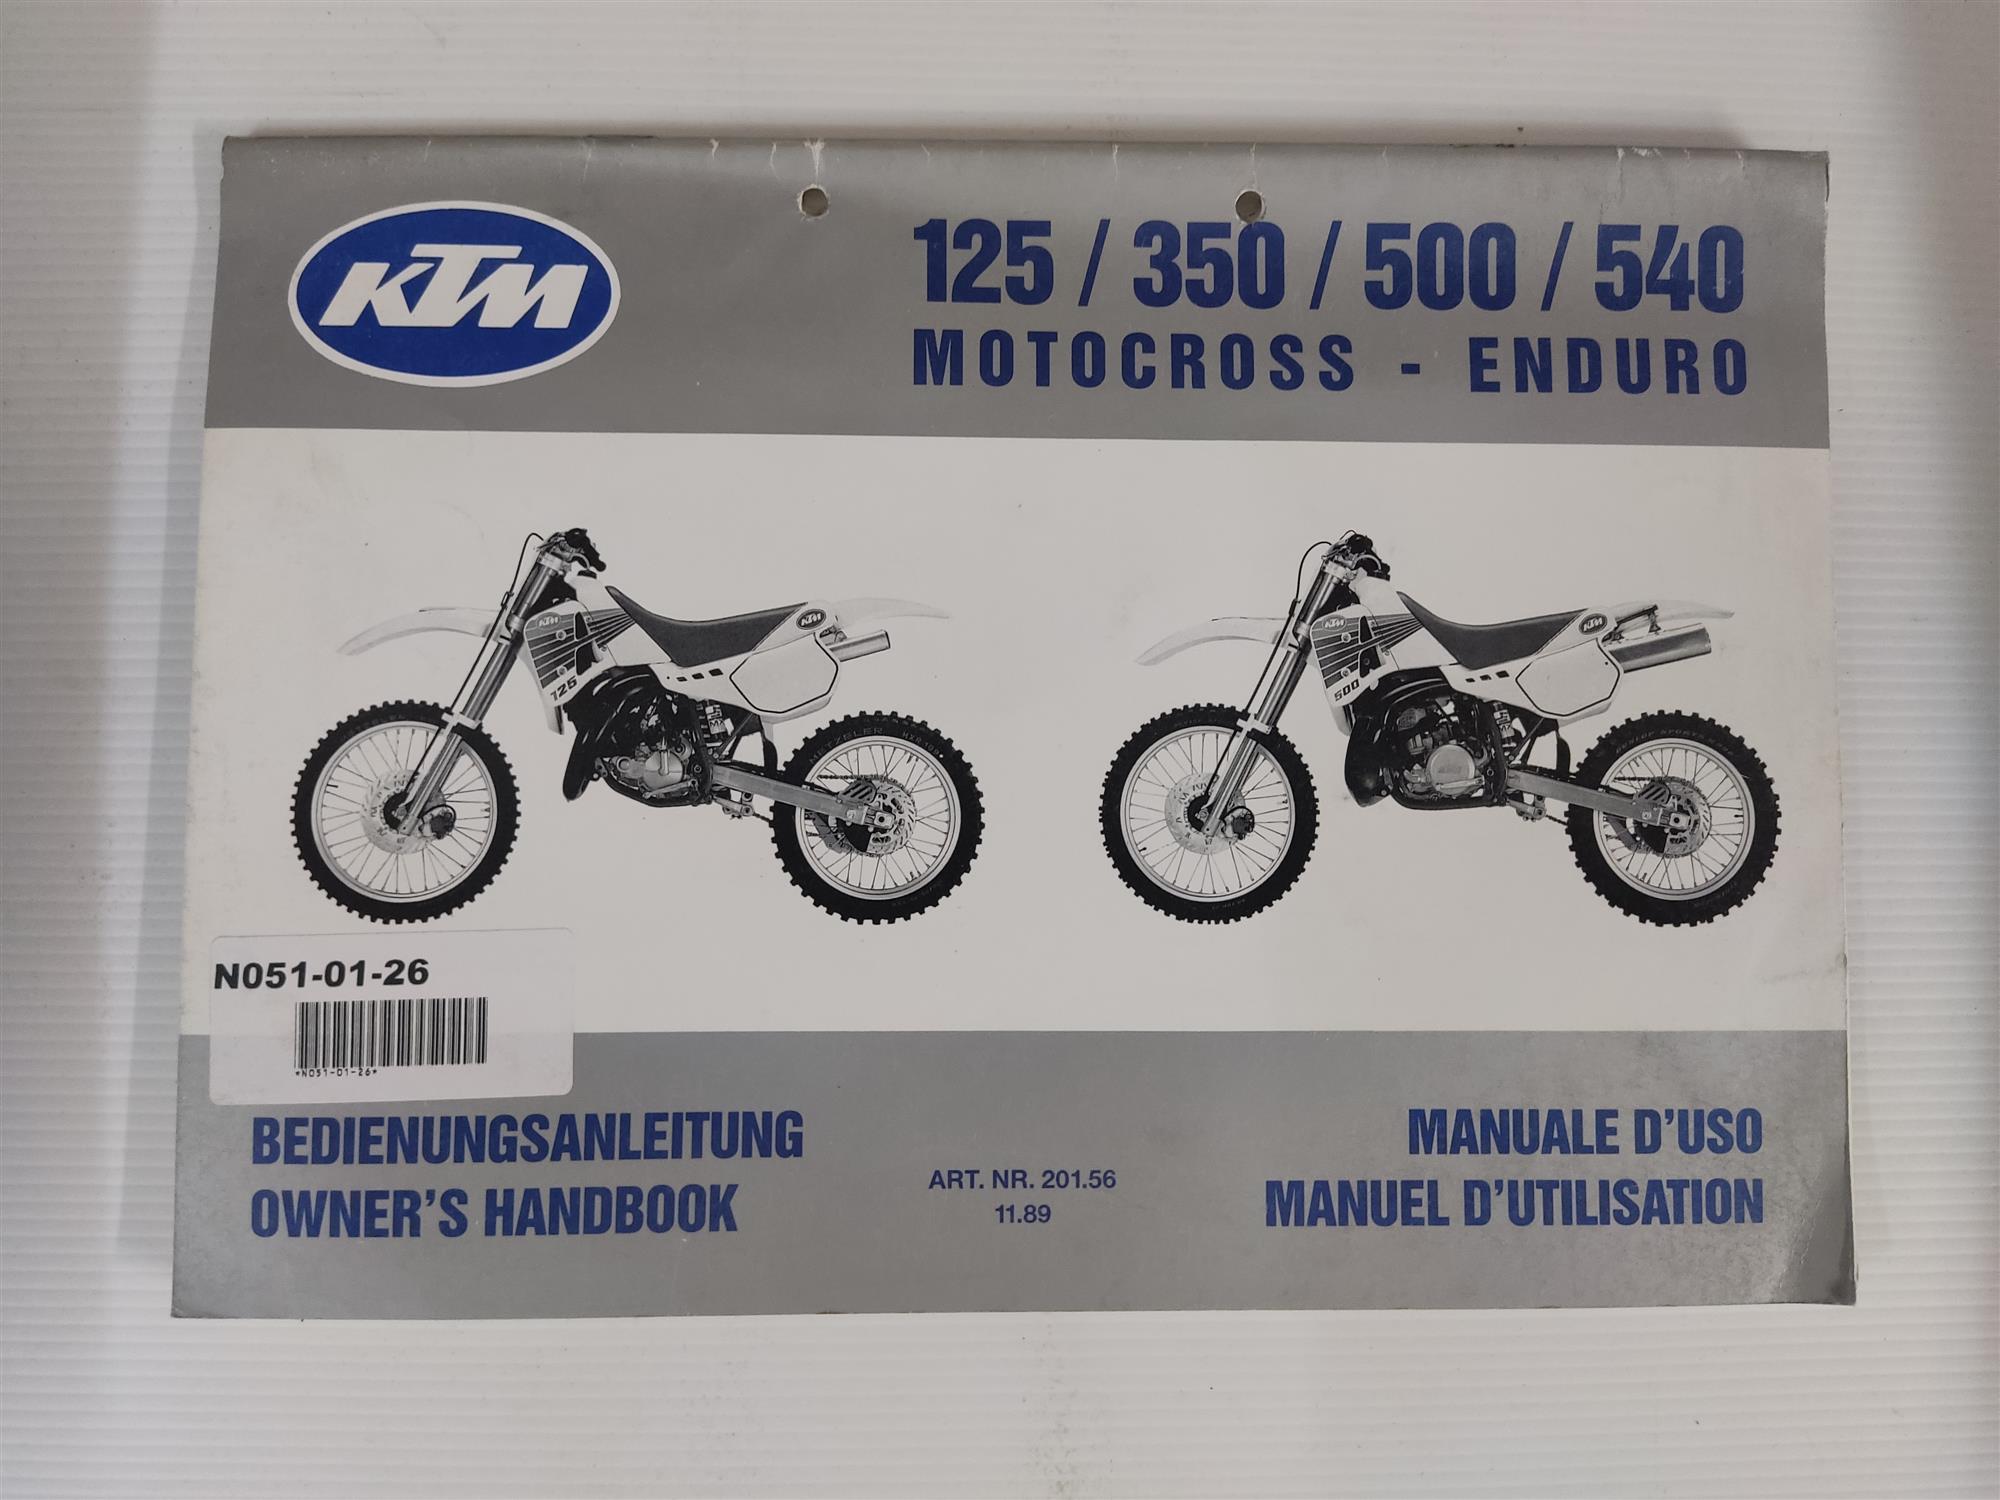 KTM 125 350 500 540 Motocross Enduro Bedienungsanleitung Wartungshandbuch 201.5611.89